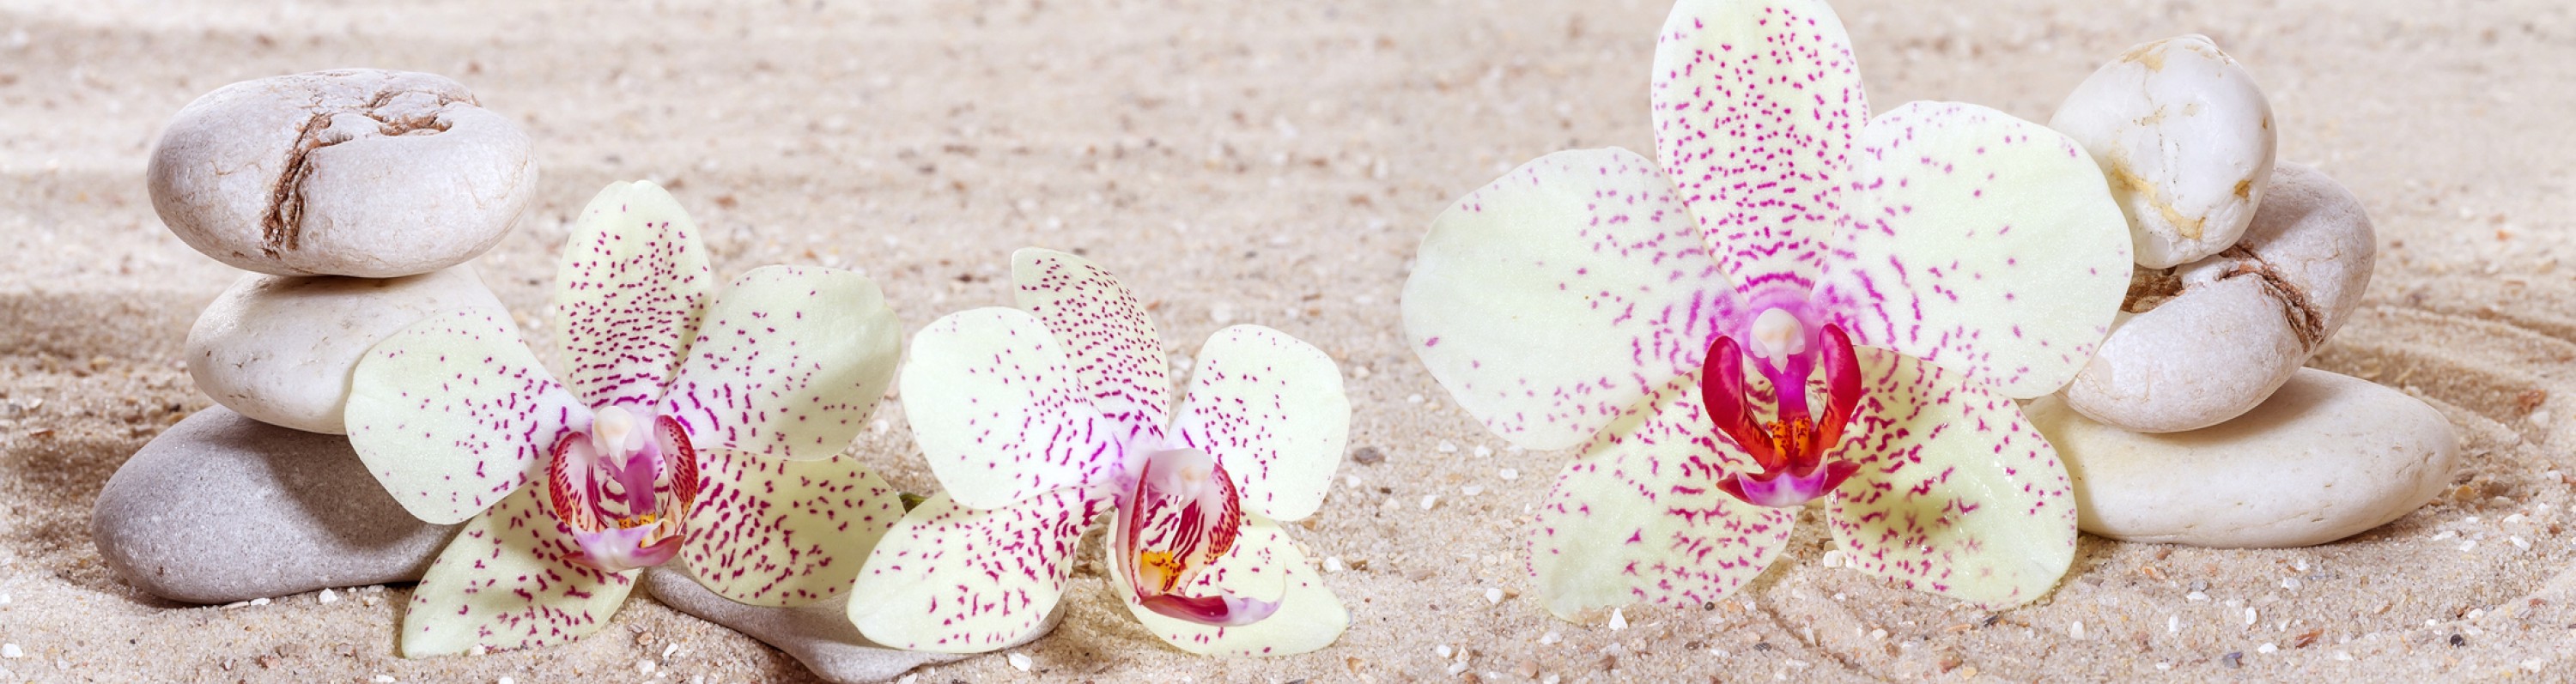 Massage Entspannung Stille Ruhe Achtsamkeit Zen Orchidee Sand Steine